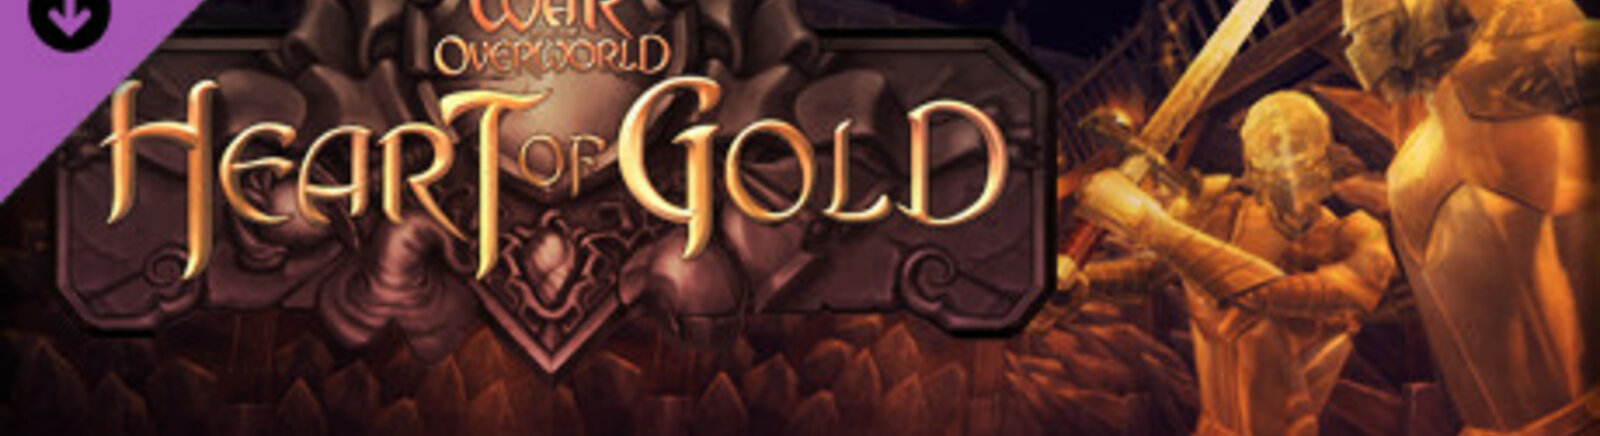 Дата выхода War for the Overworld: Heart of Gold  на PC, Mac и Linux в России и во всем мире